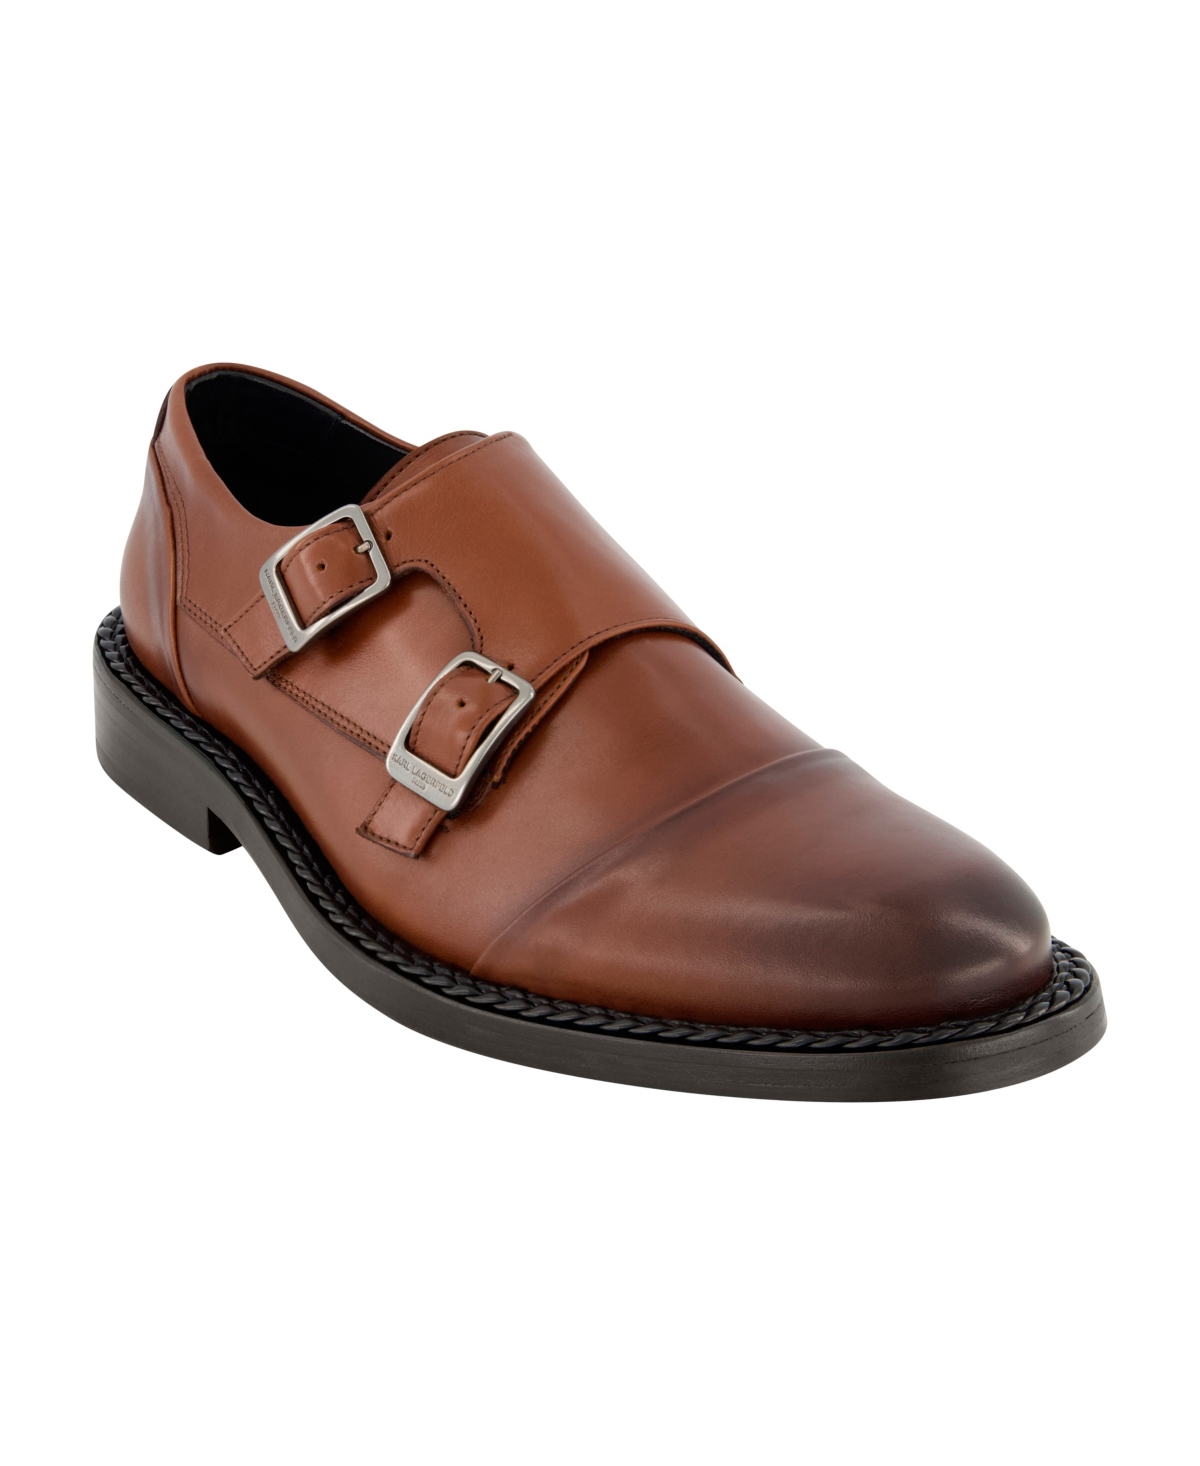 Men's Leather Double Monk Cap Toe Dress Shoes - Brown